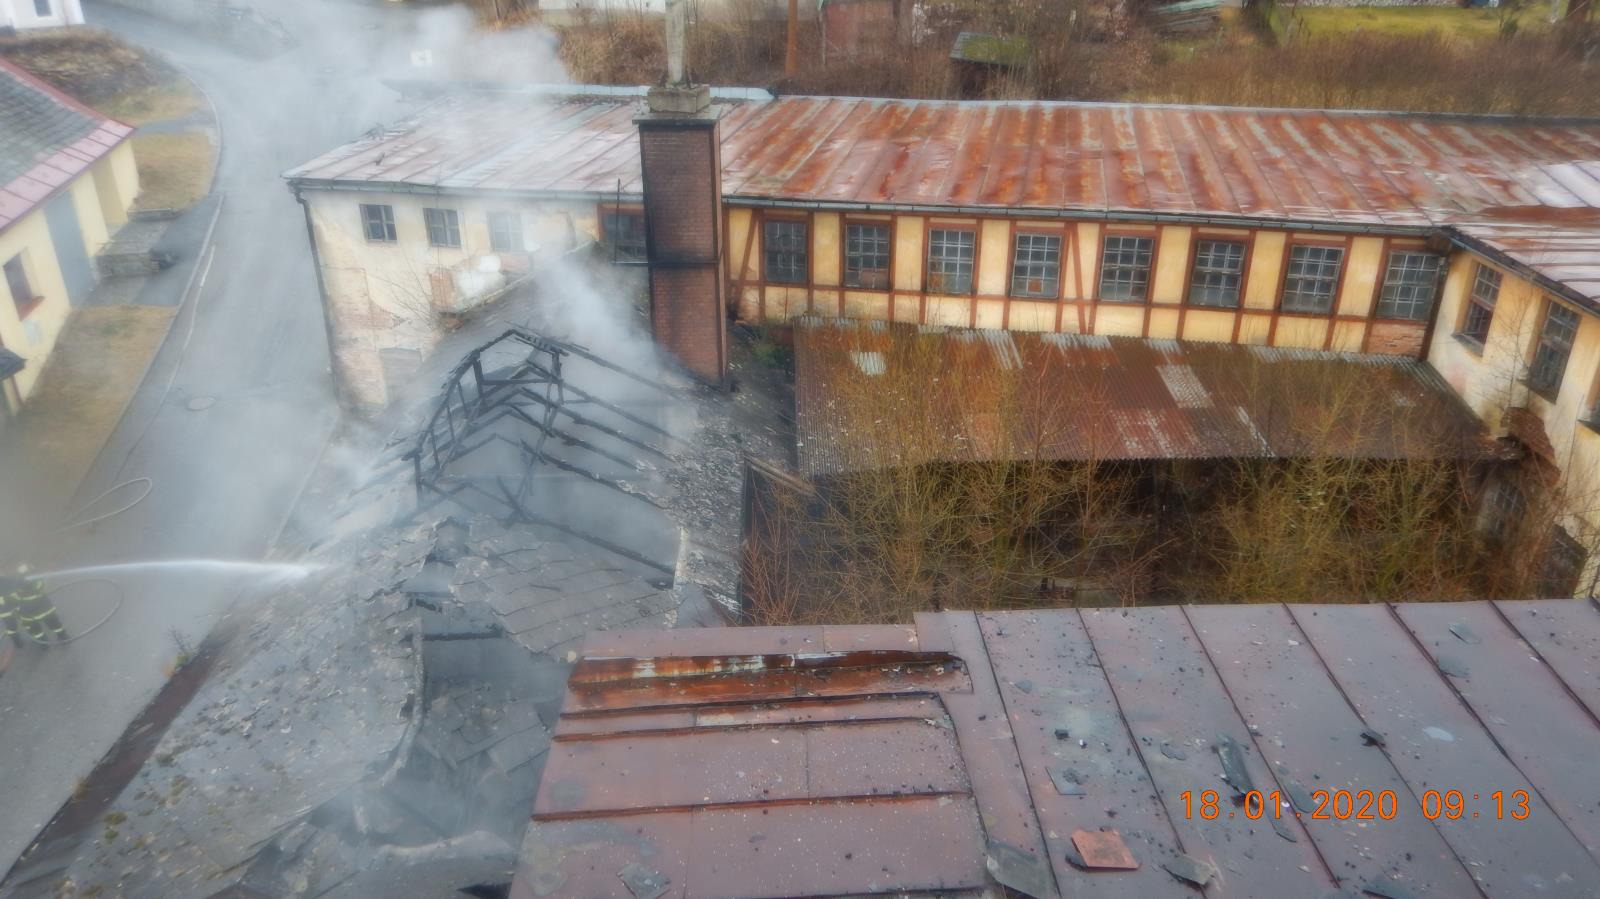 Požár budovy, Vimperk - 18. 1. 2020 (4).JPG